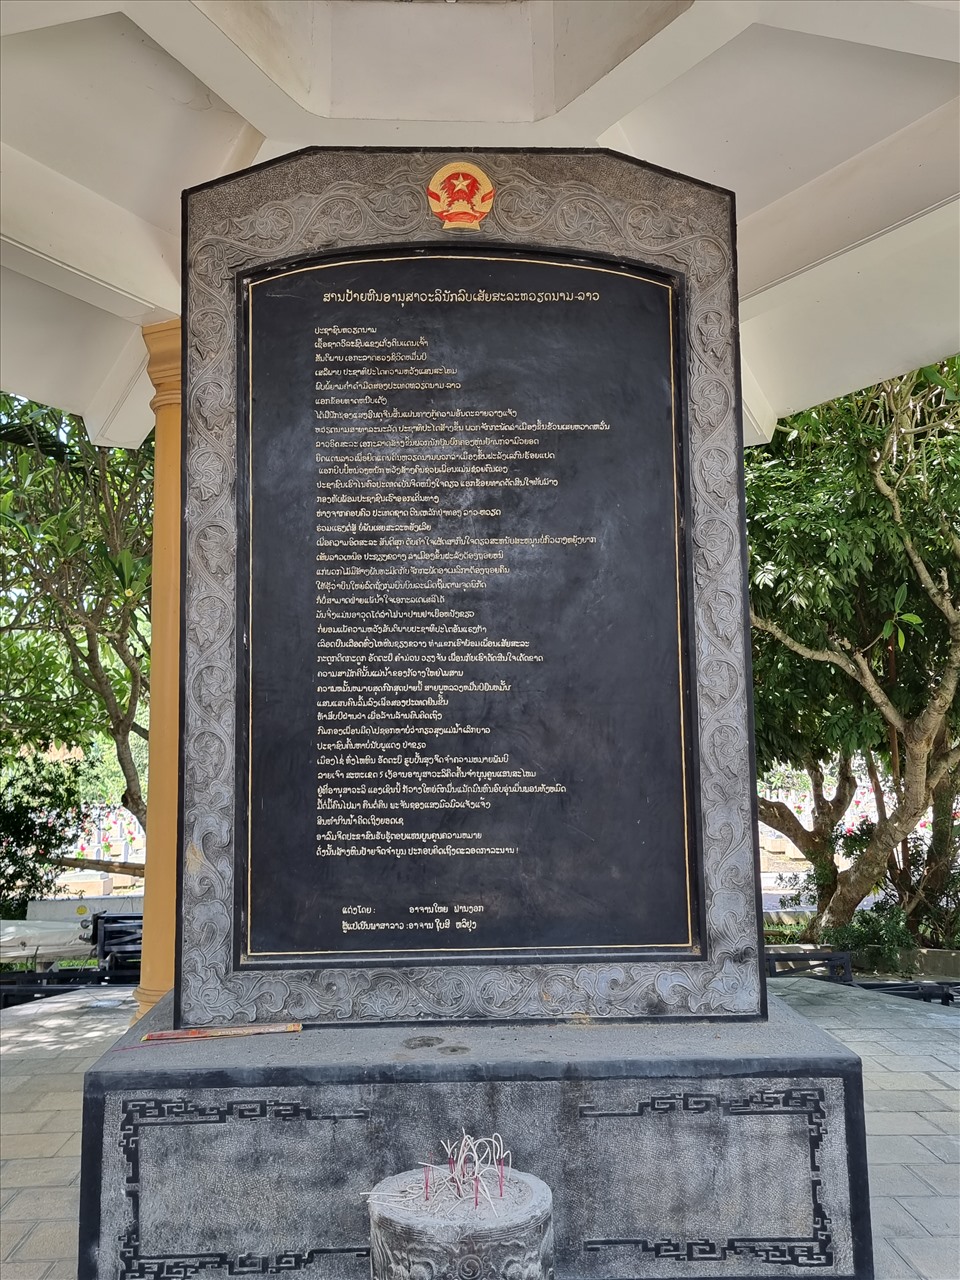 Tại đây có văn bia Nghĩa trang liệt sĩ quốc tế Việt Lào do Giáo sư Phan Ngọc soạn.